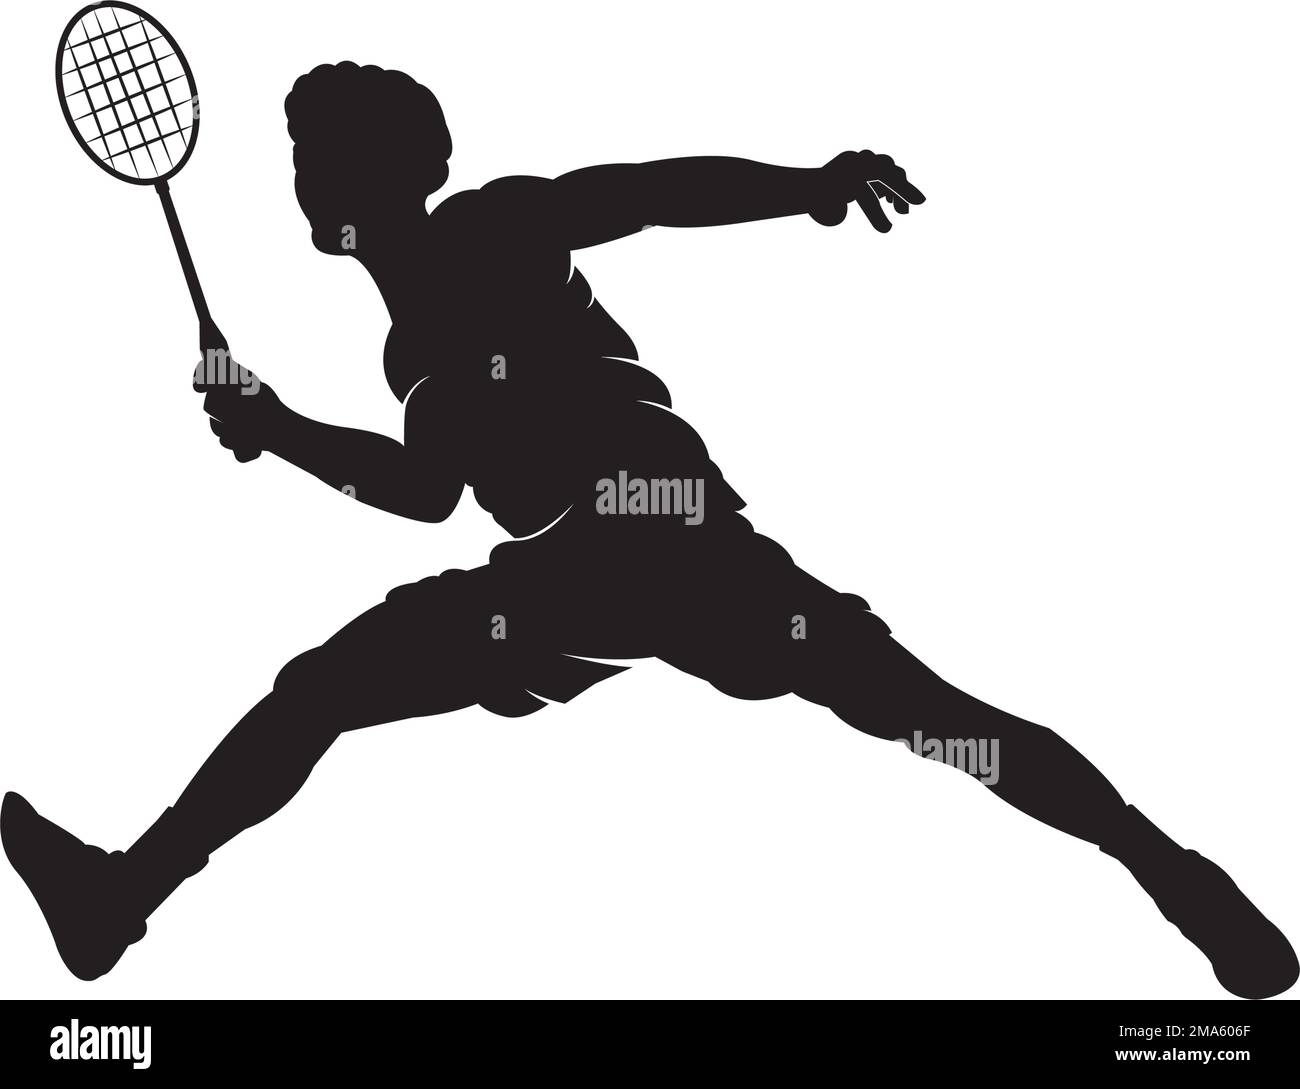 badminton icon vector illustration logo template Stock Vector